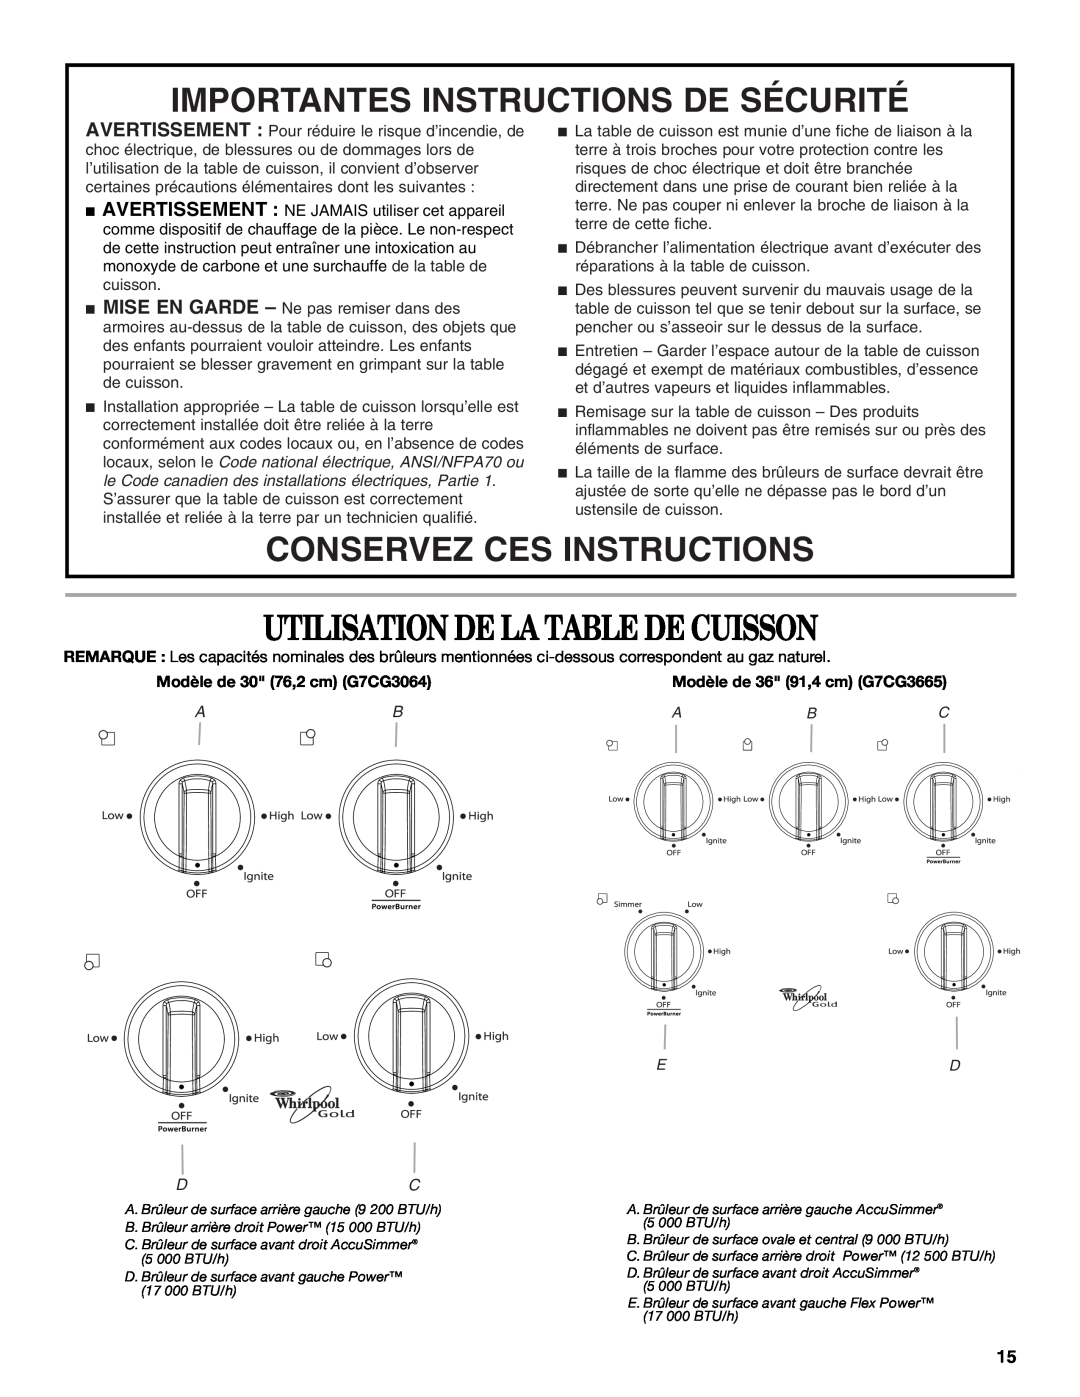 Whirlpool W5CG3625XB Utilisation De La Table De Cuisson, Importantes Instructions De Sécurité, Conservez Ces Instructions 